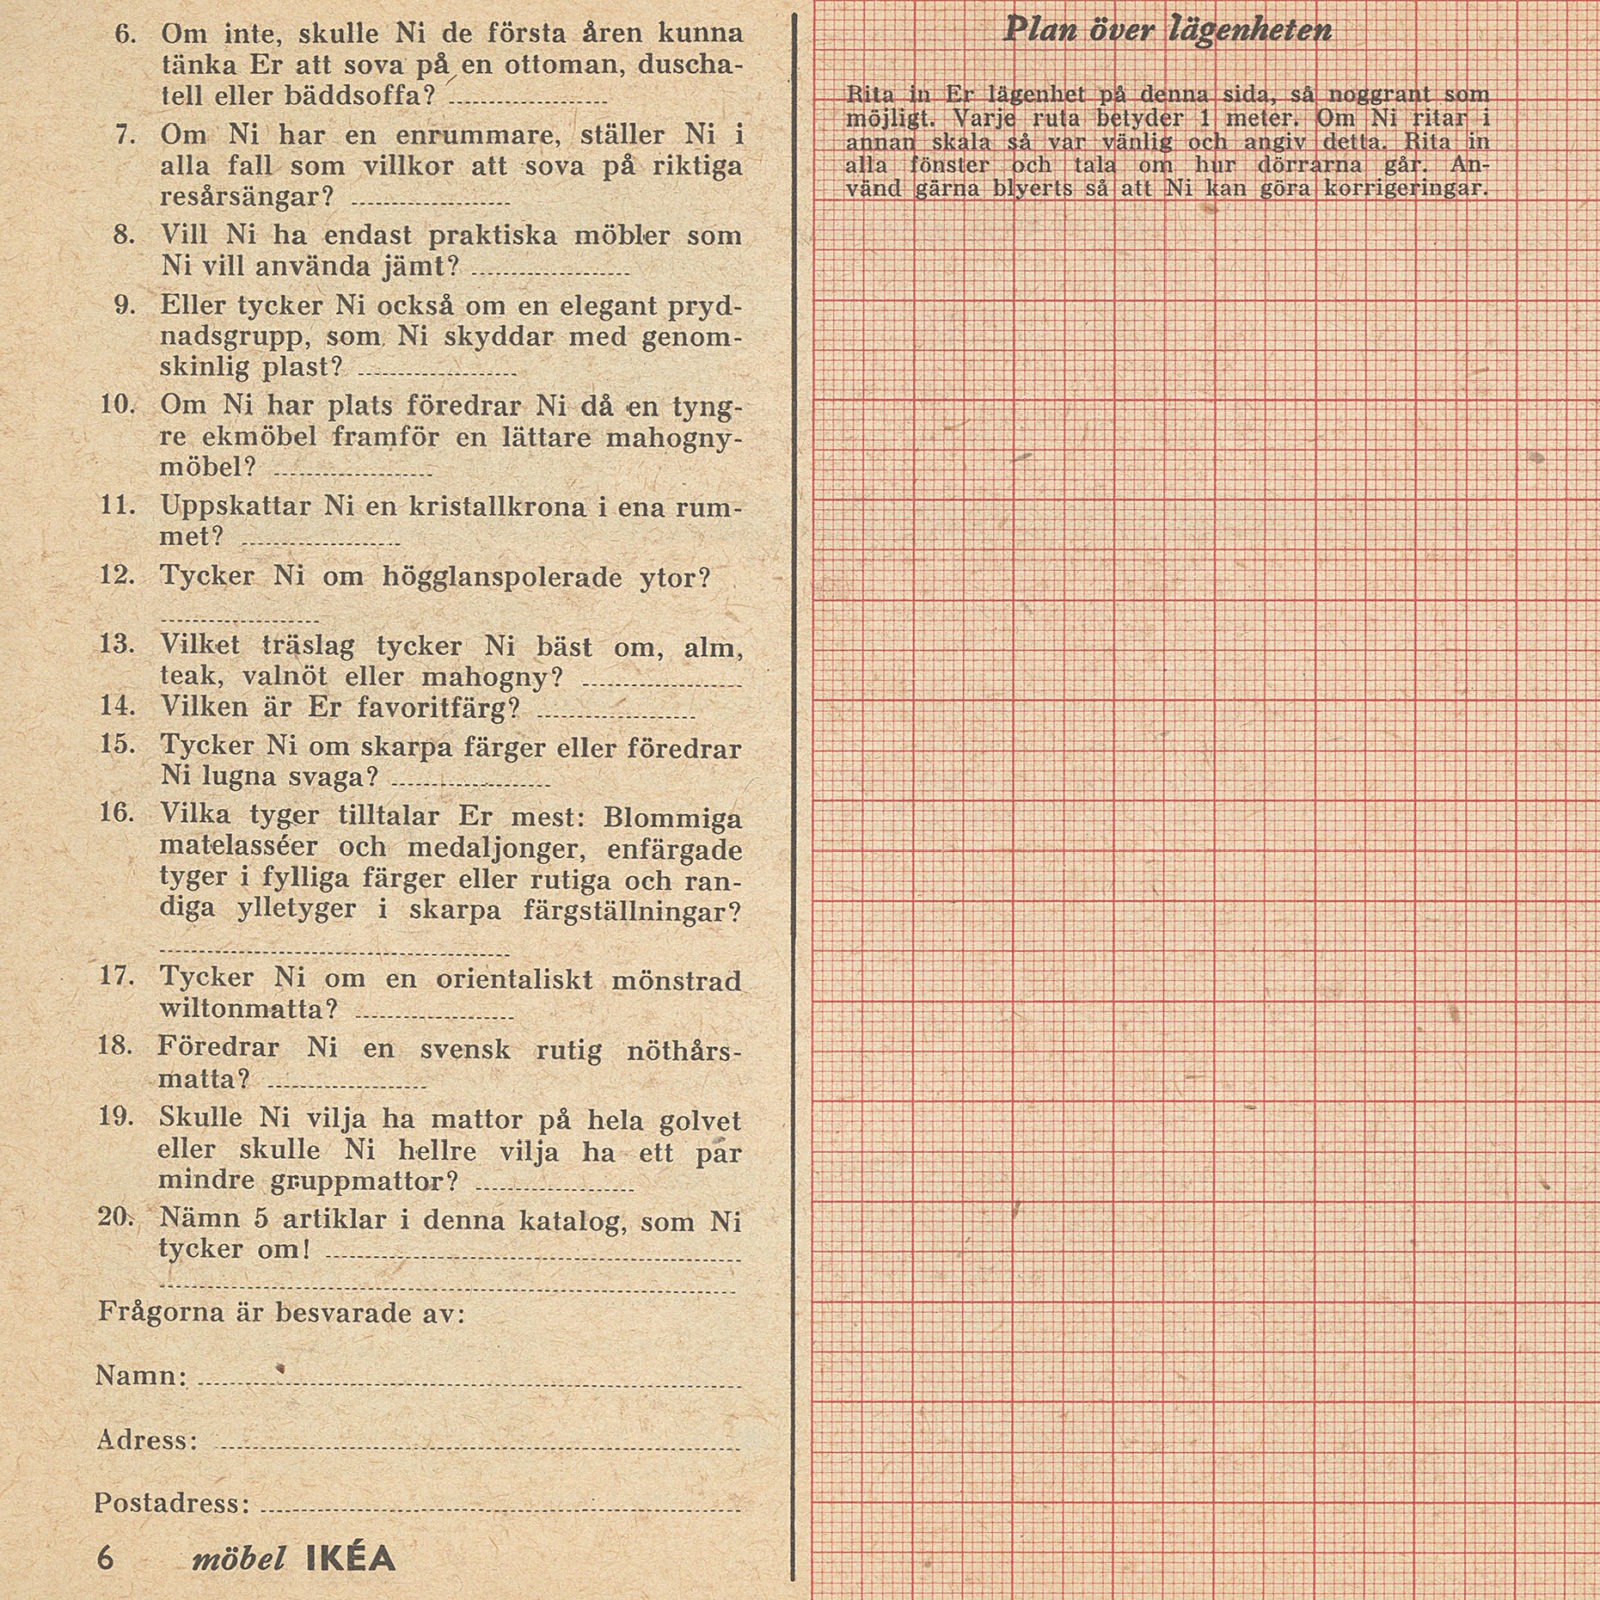 Frågeformulär för kunder i IKEA-katalogen 1957, med plats för att skissa sin lägenhet.